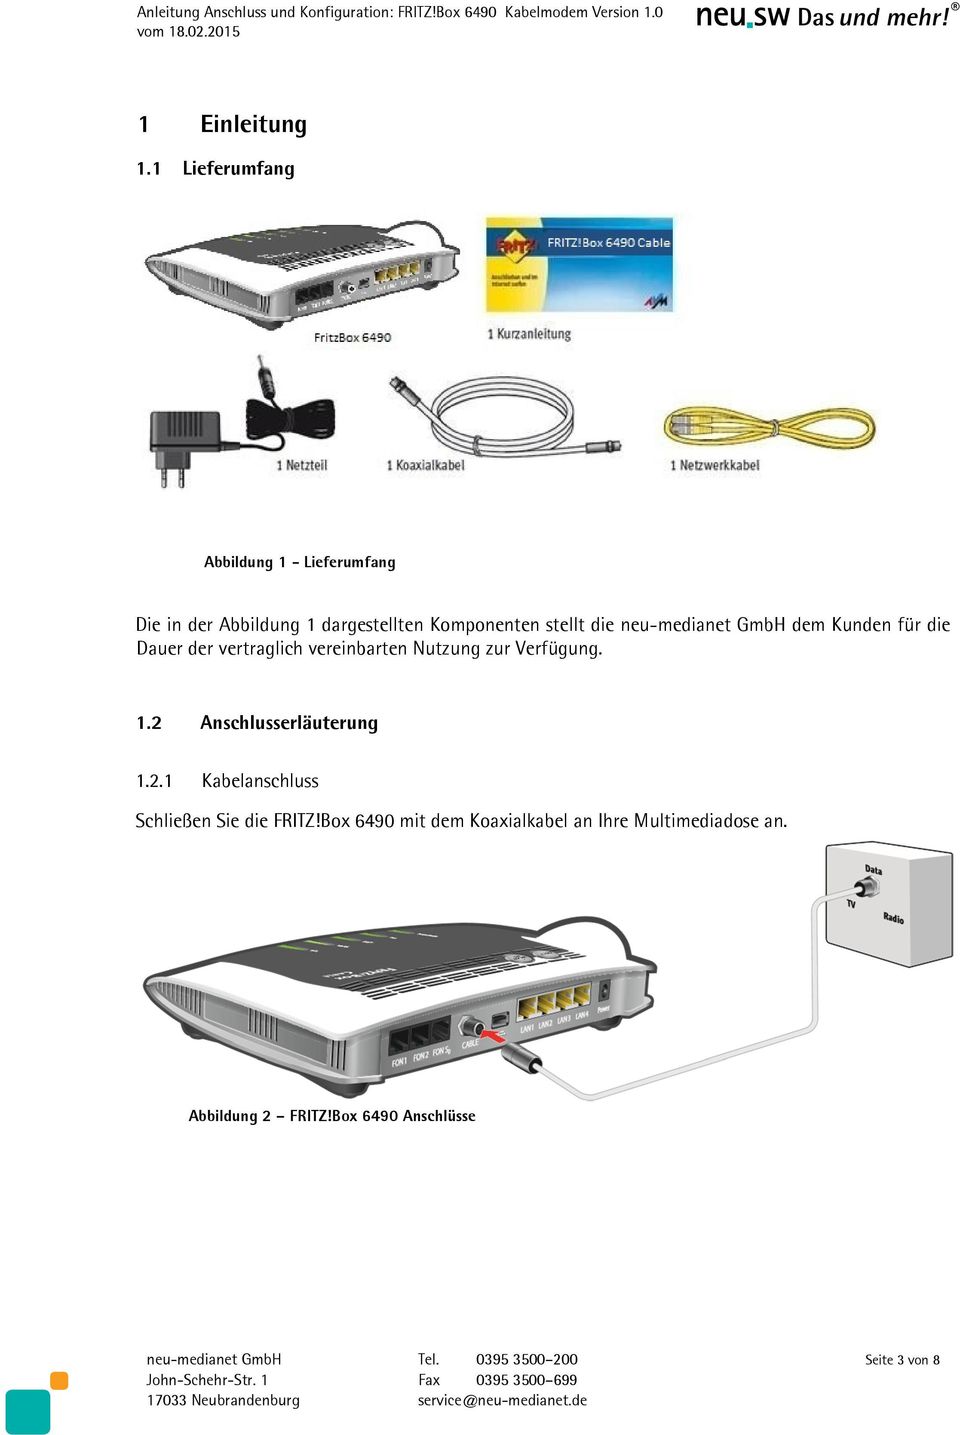 neu-medianet GmbH dem Kunden für die Dauer der vertraglich vereinbarten Nutzung zur Verfügung. 1.